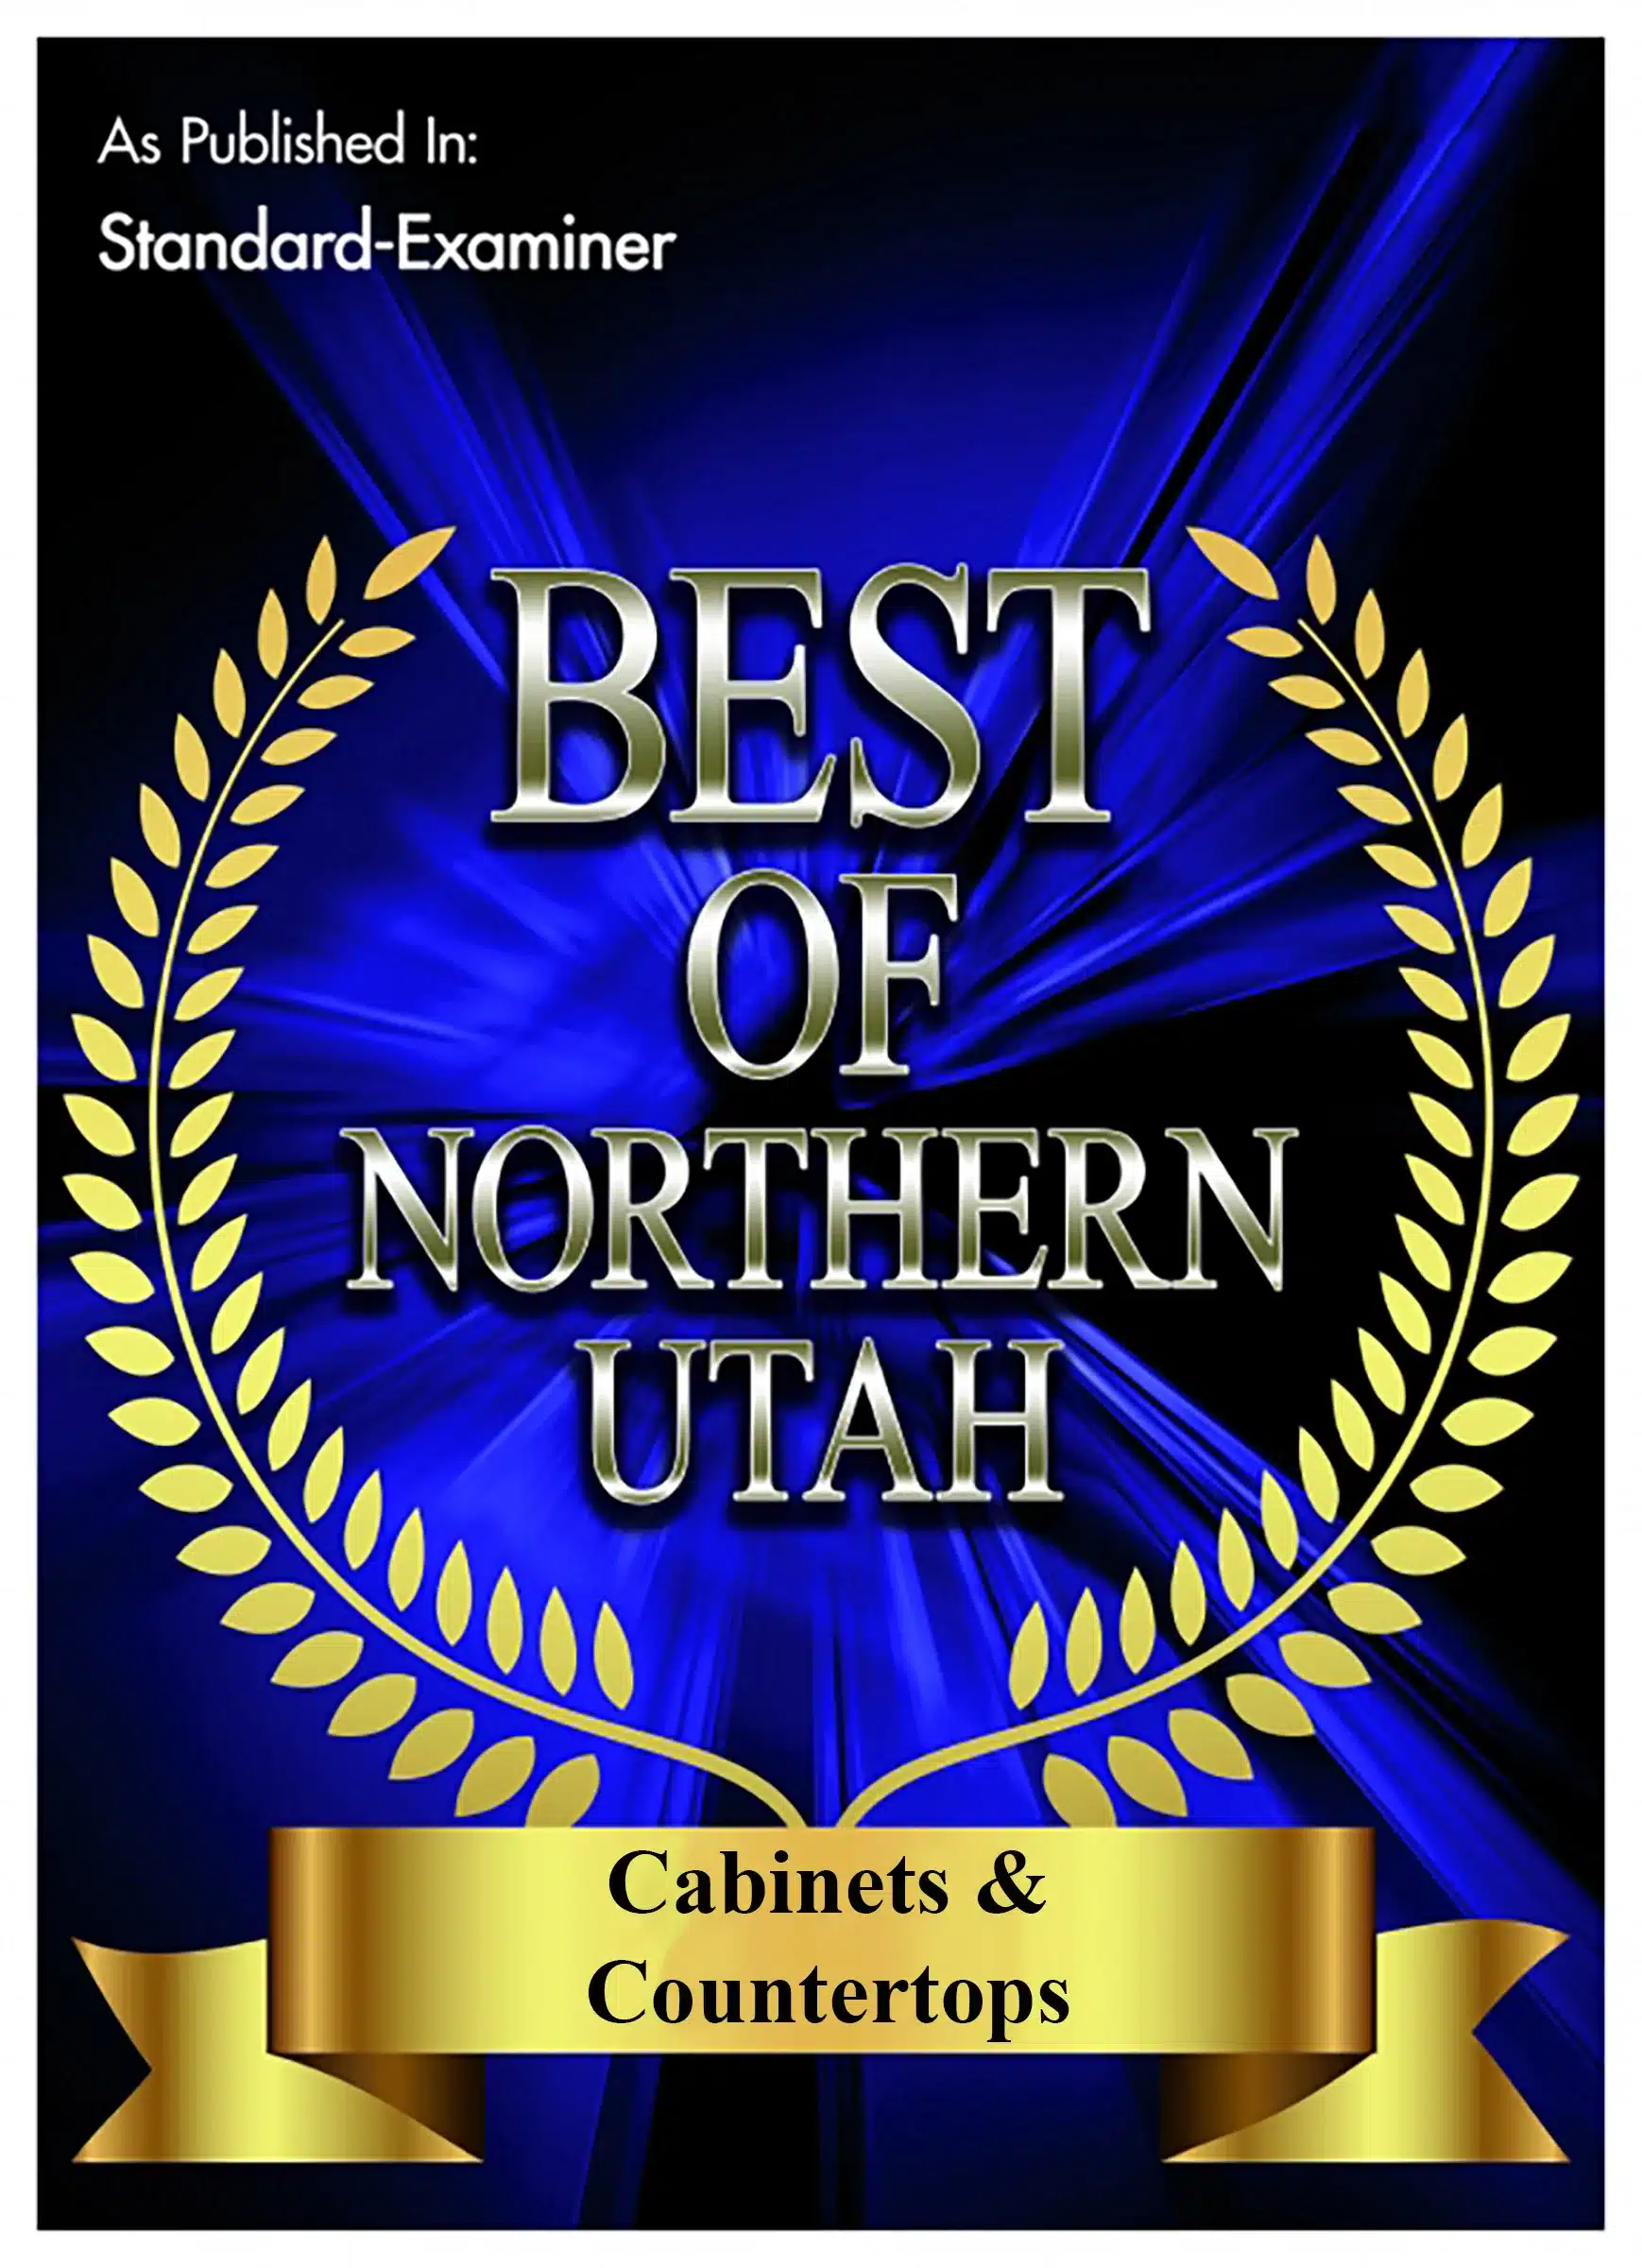 Best of Northern Utah awards